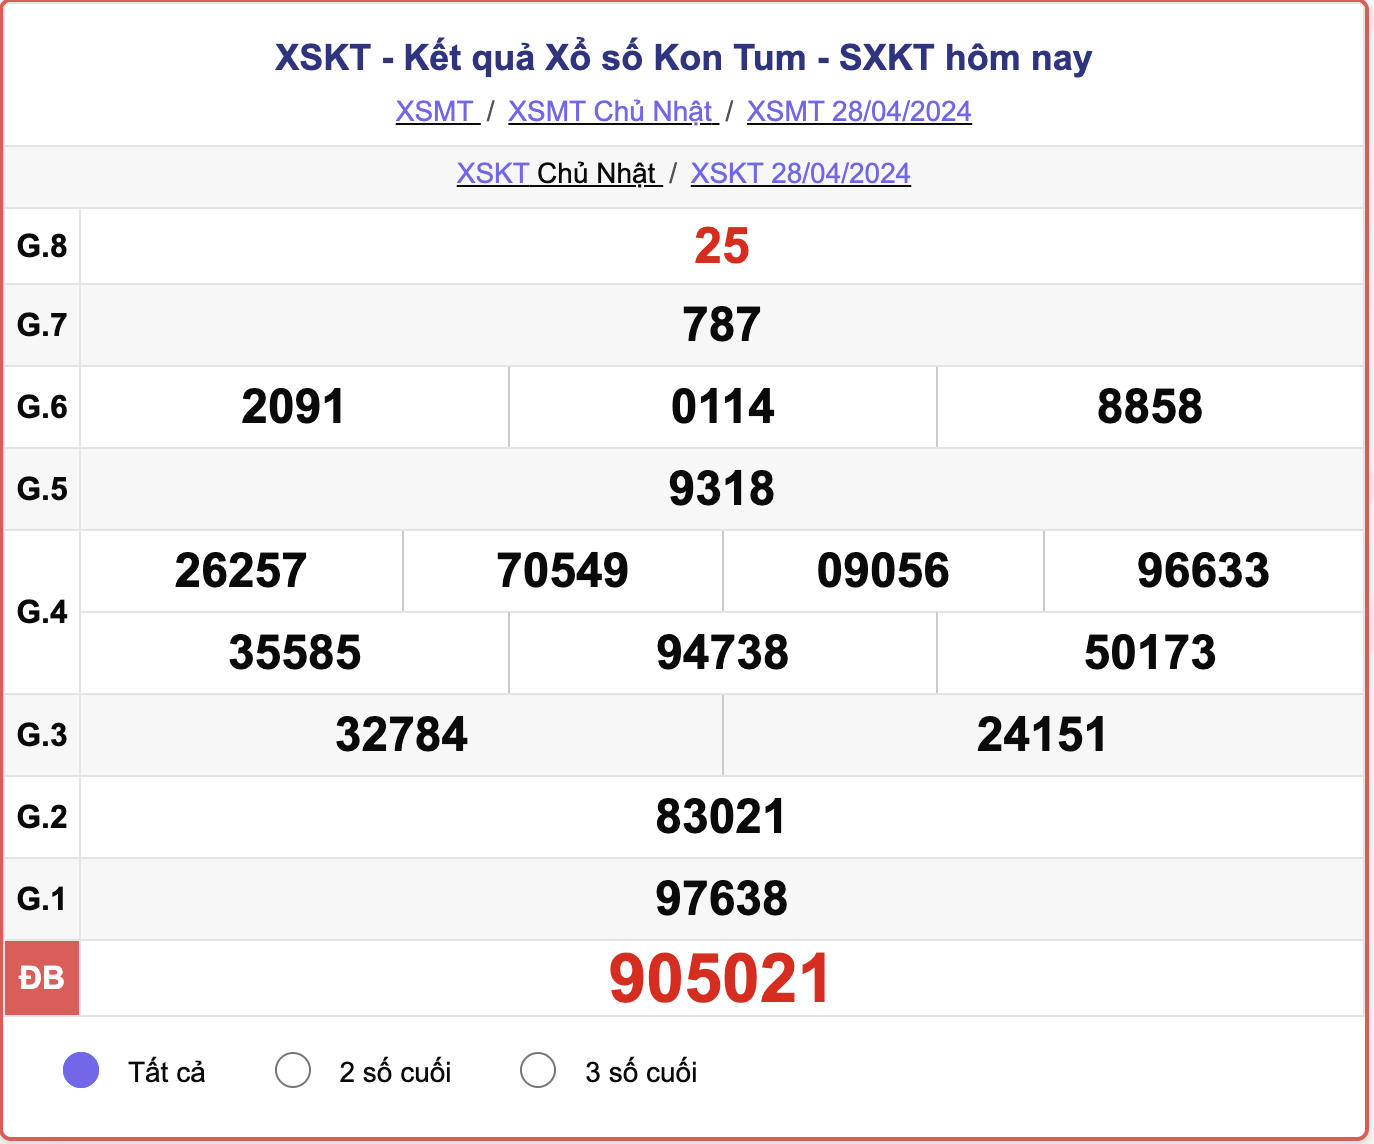 XSKT Chủ nhật, kết quả xổ số Kon Tum ngày 28/4/2024.